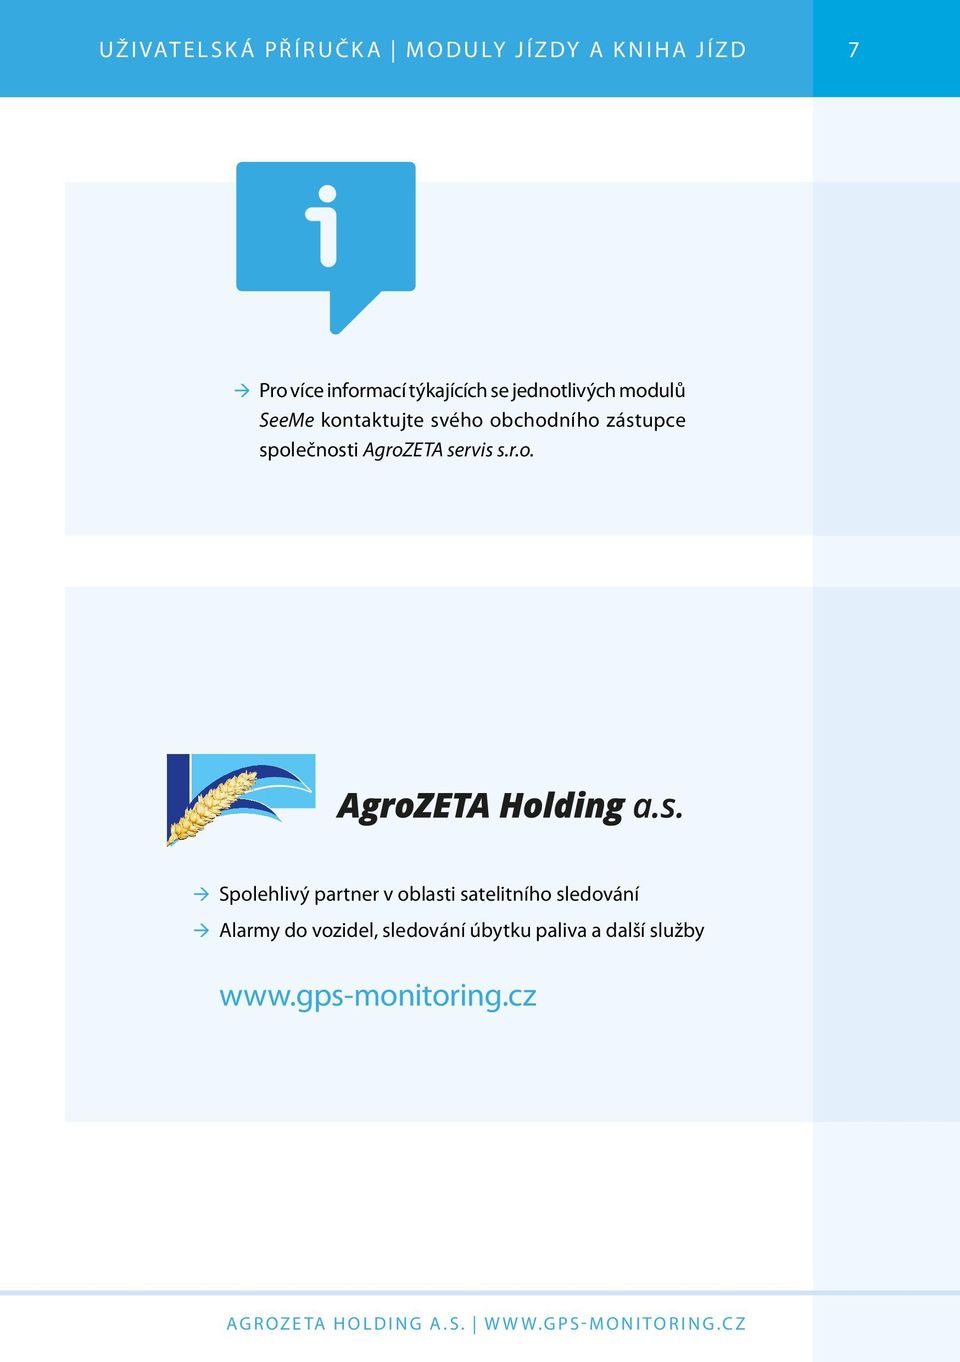 společnosti AgroZETA servis s.r.o. ÆÆSpolehlivý partner v oblasti satelitního